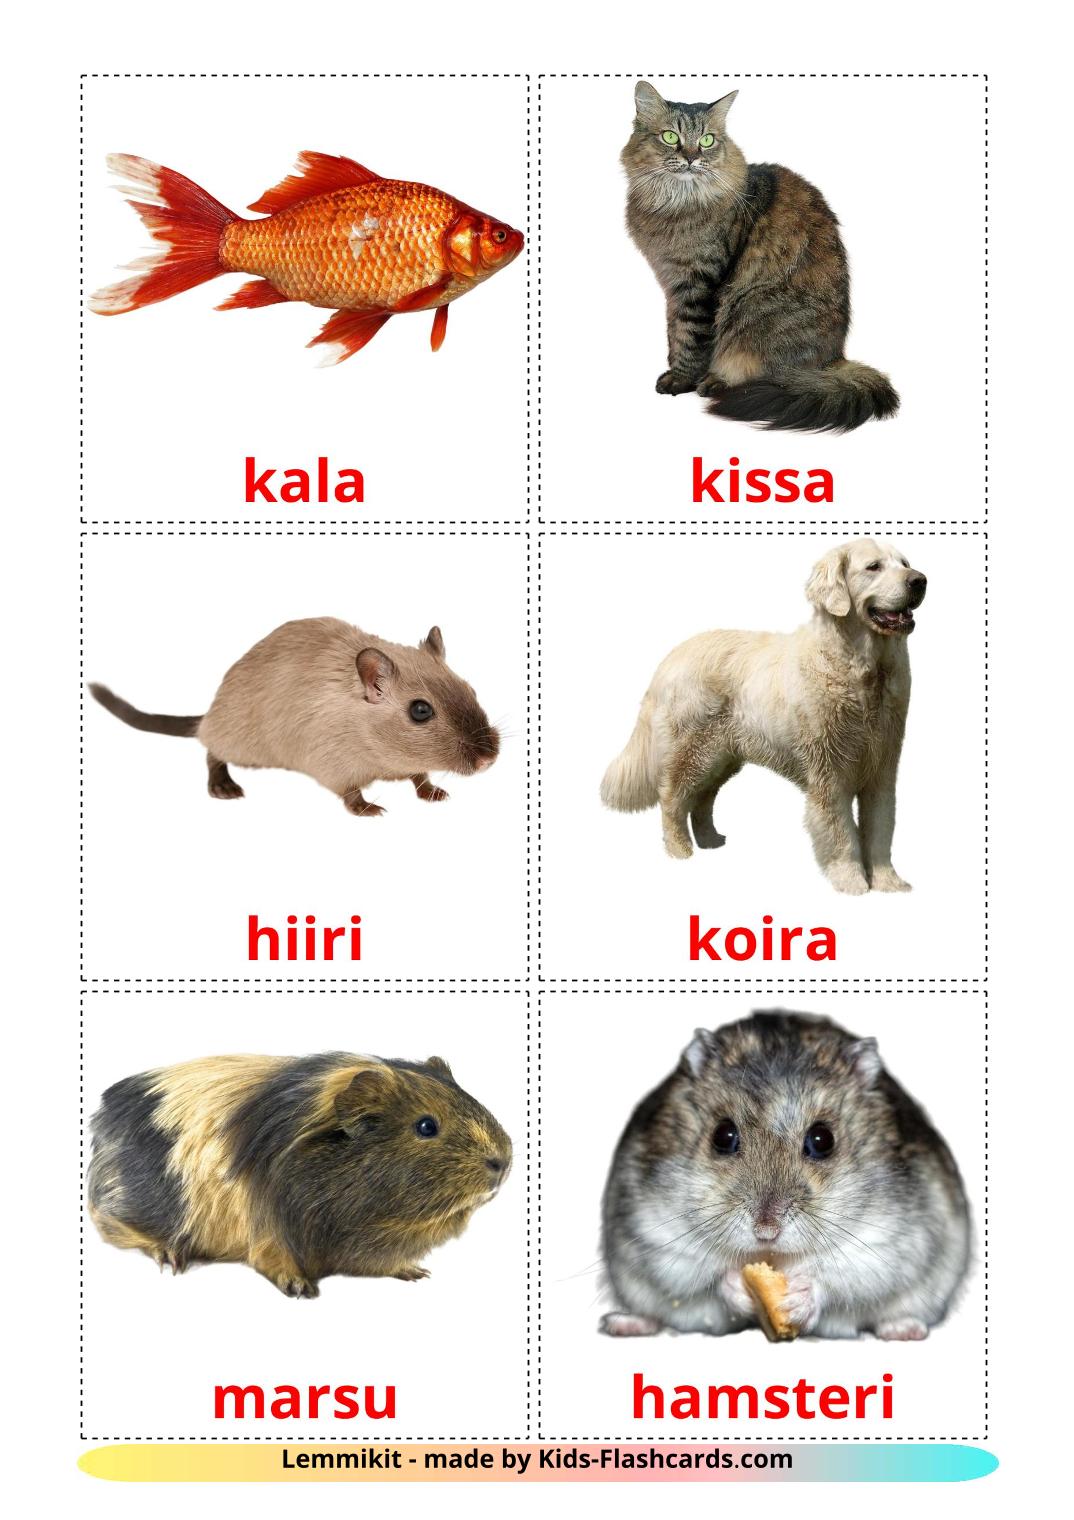 Les animaux Domestiques - 10 Flashcards finlandais imprimables gratuitement